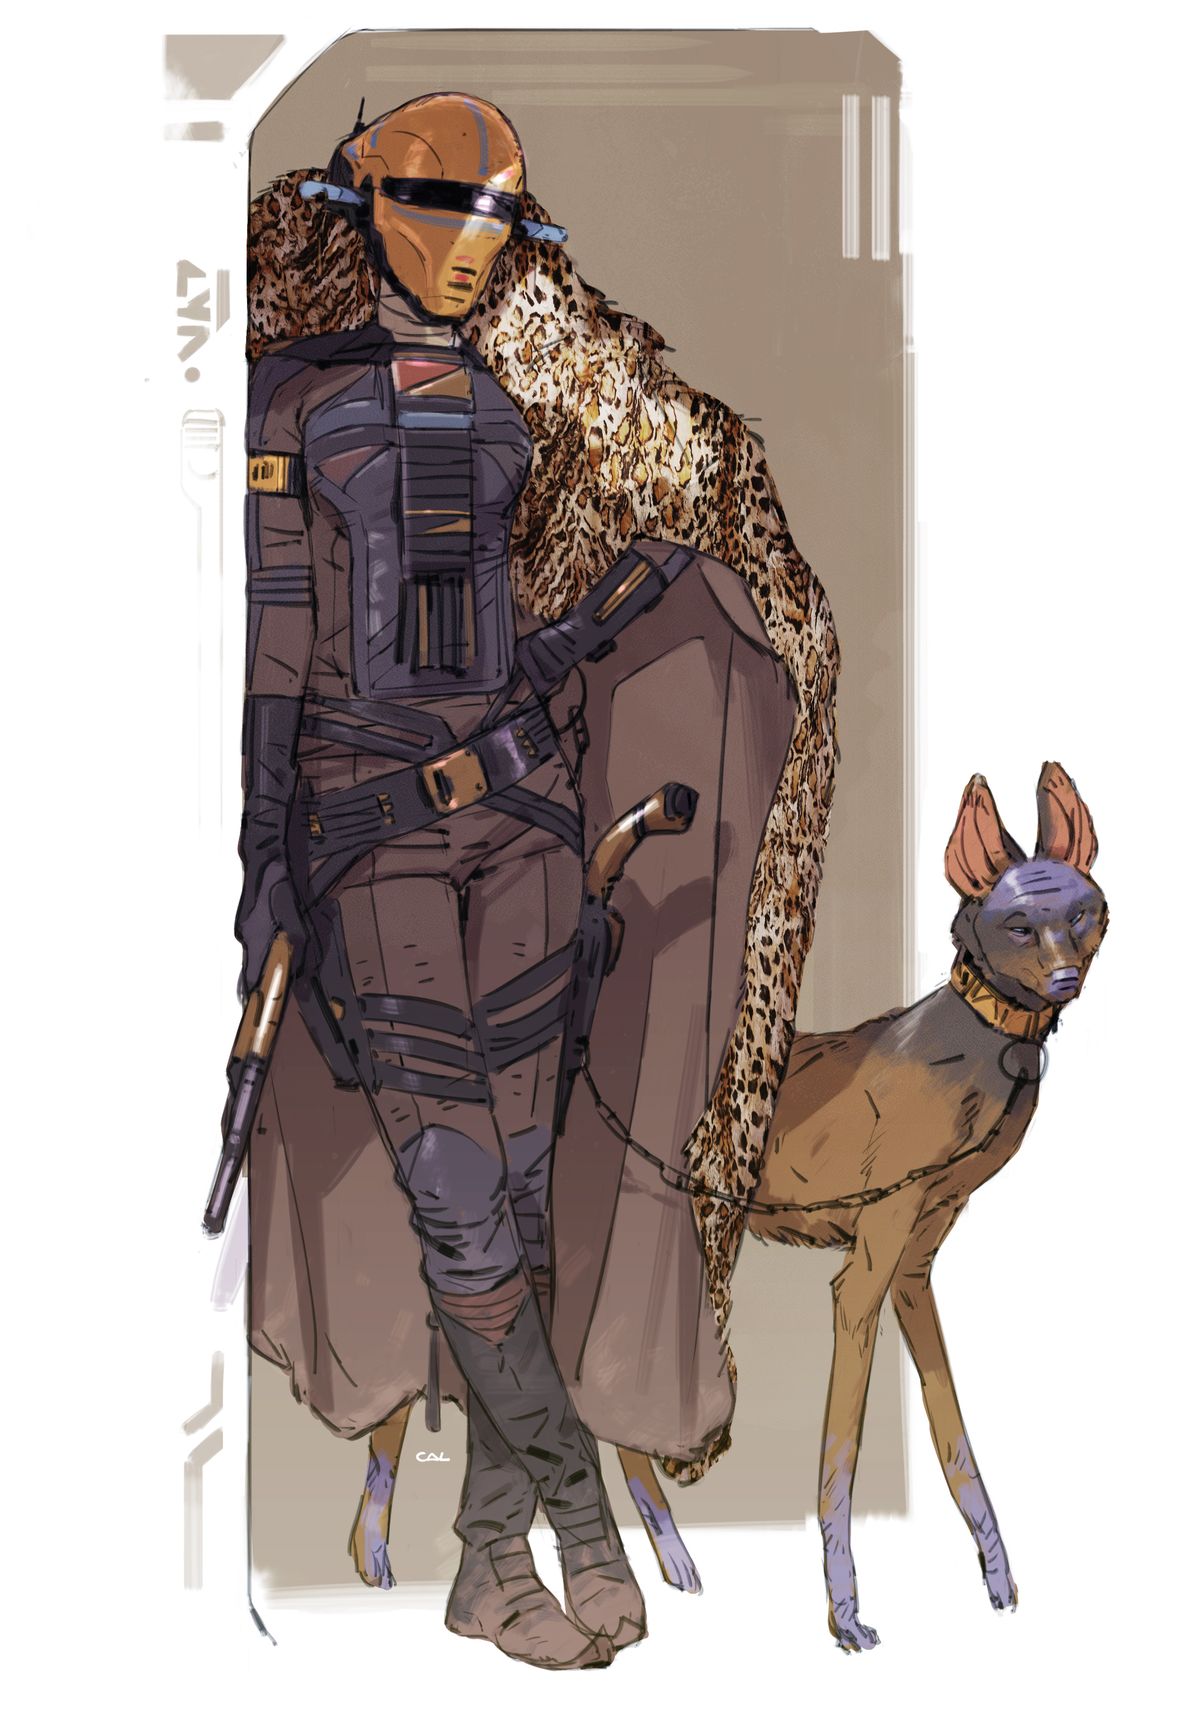 En tidig version av Zorii Bliss, stående med en leopardtryckt kappa, en litet, hundliknande varelse på en smal ledning från Star Wars-konceptkonst